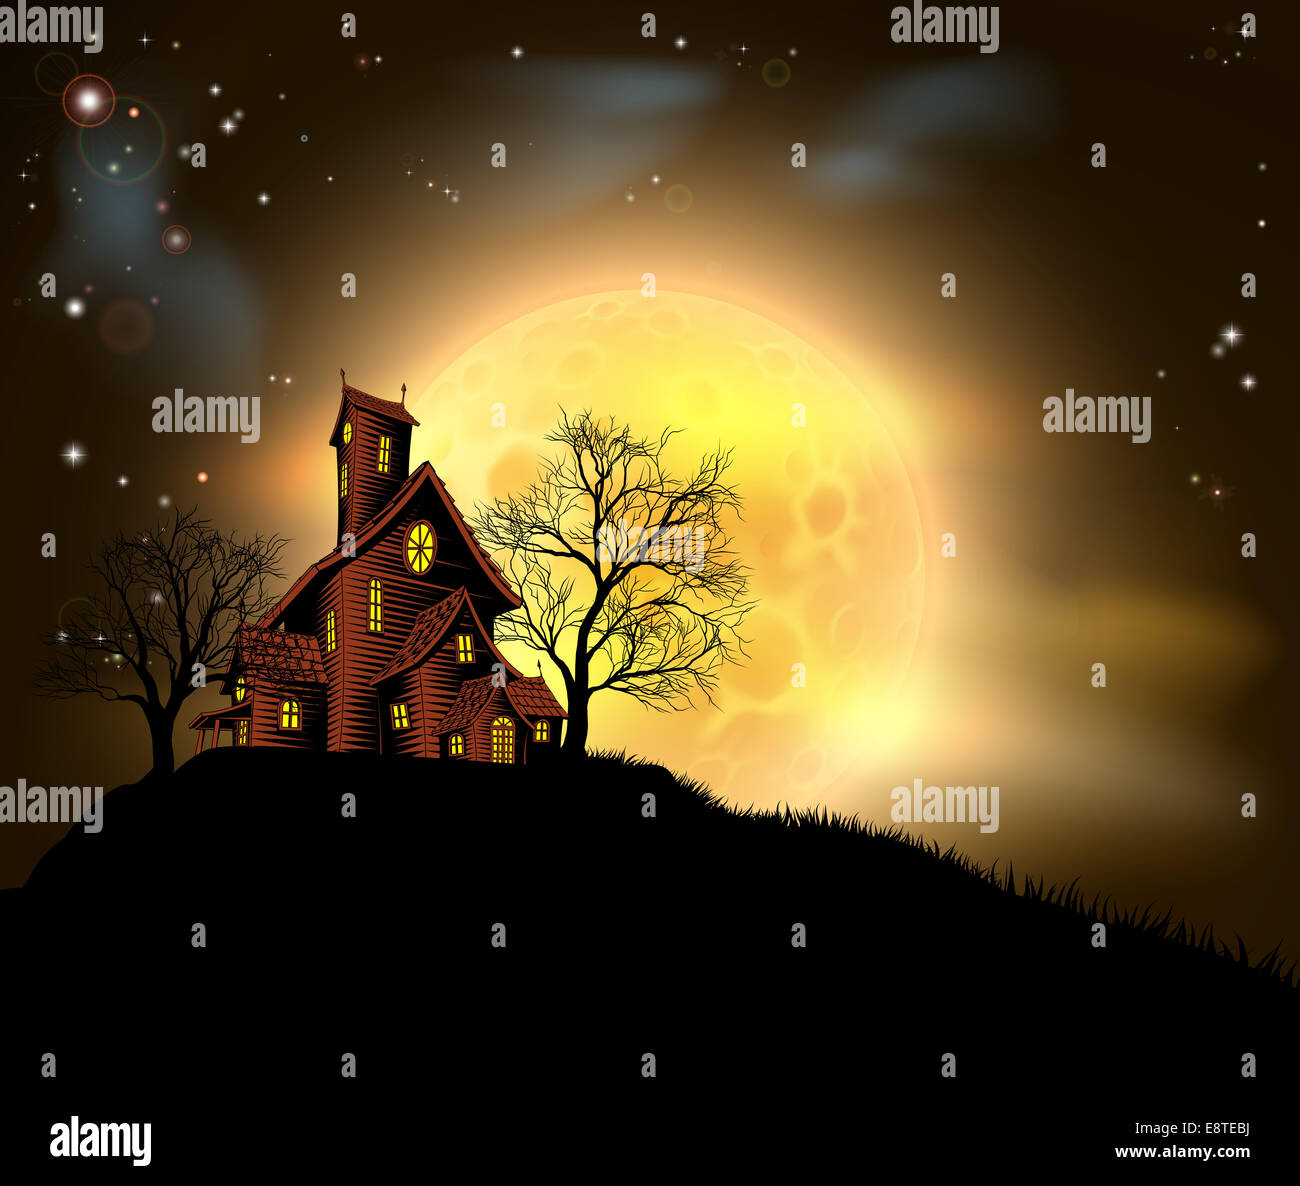 Une maison hantée Halloween illustration avec un spooky house au sommet d'une colline avec une grande pleine lune dans l'arrière-plan Banque D'Images